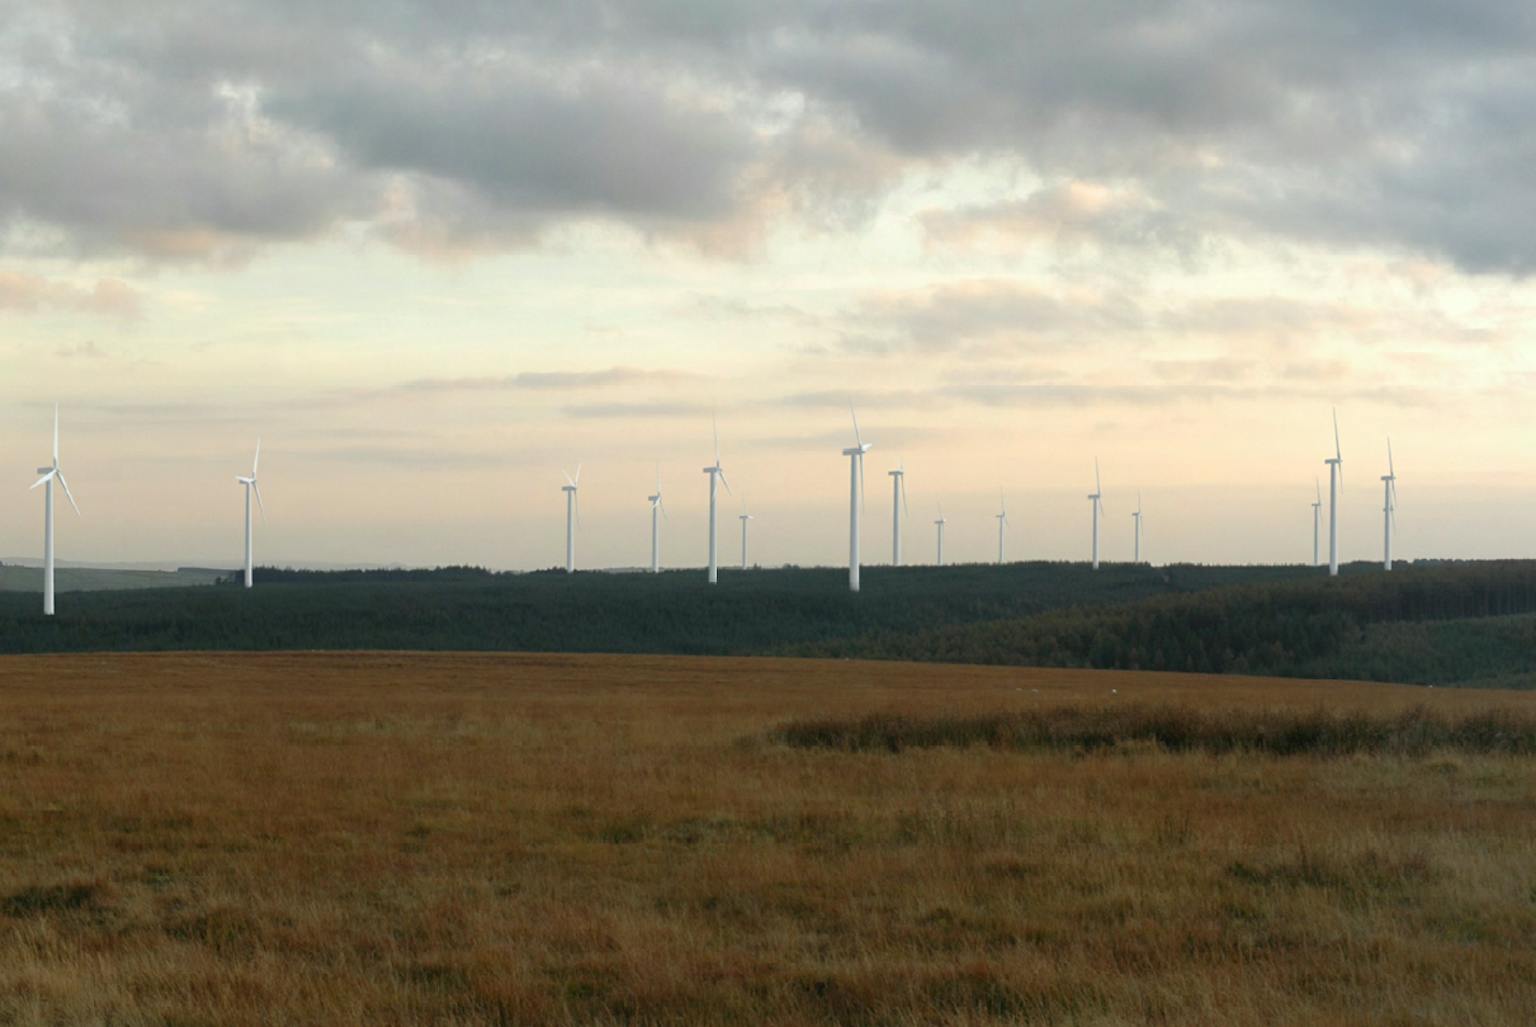 Brechfa Forest West wind farm